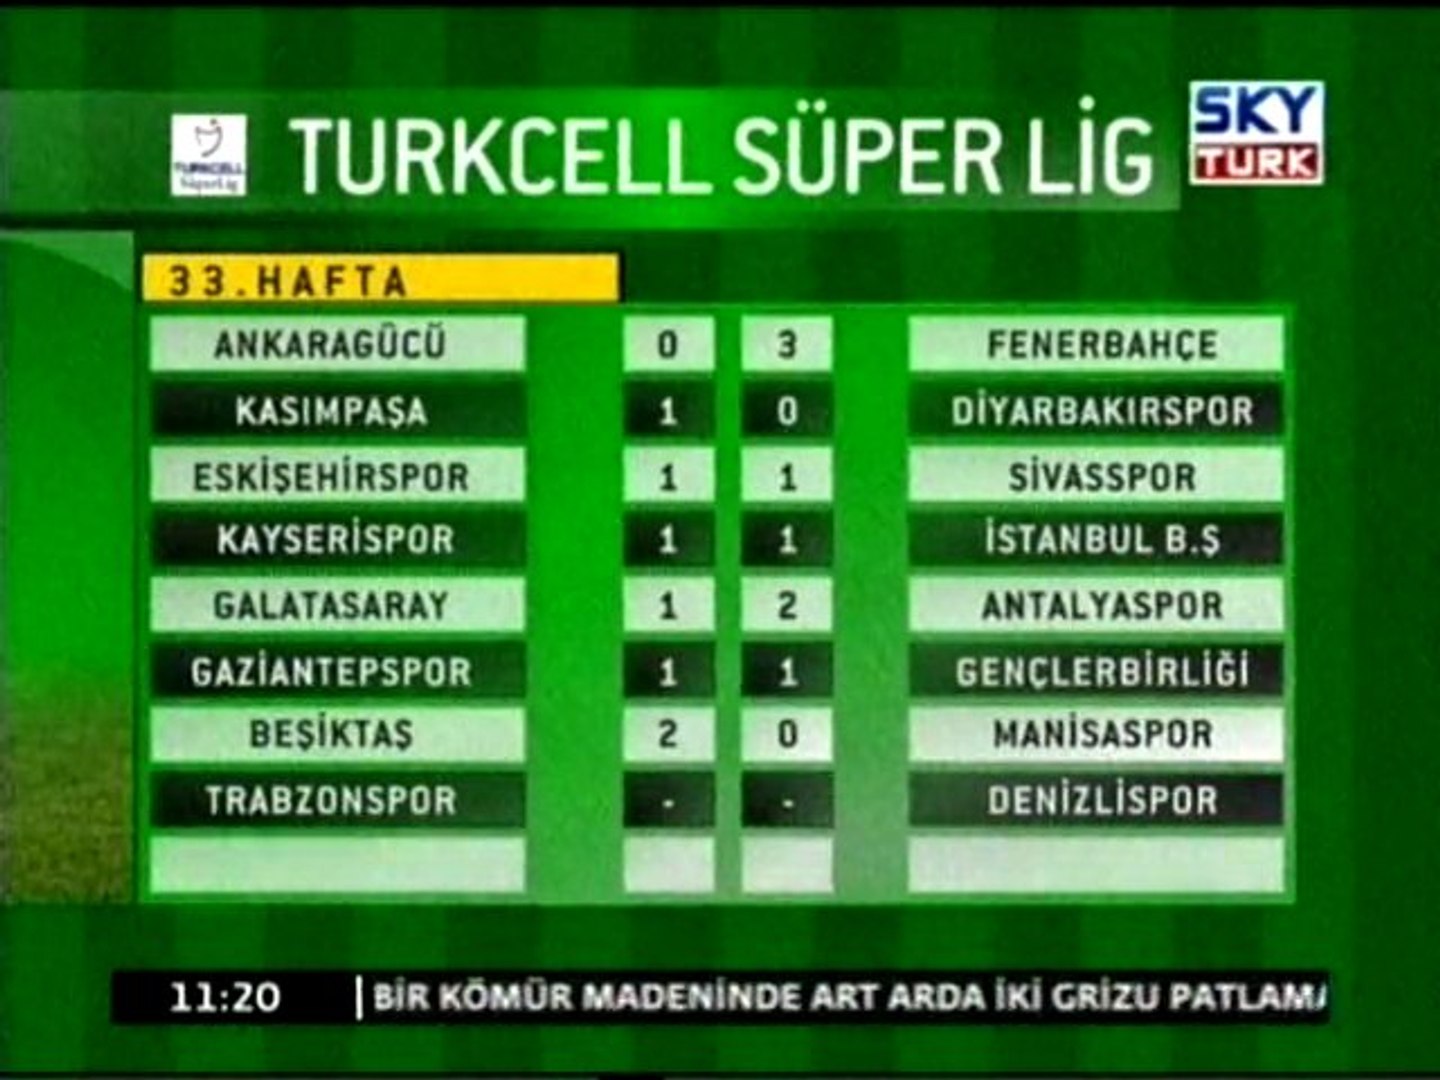 Turkcell Süper Lig (33.Hafta) - Dailymotion Video